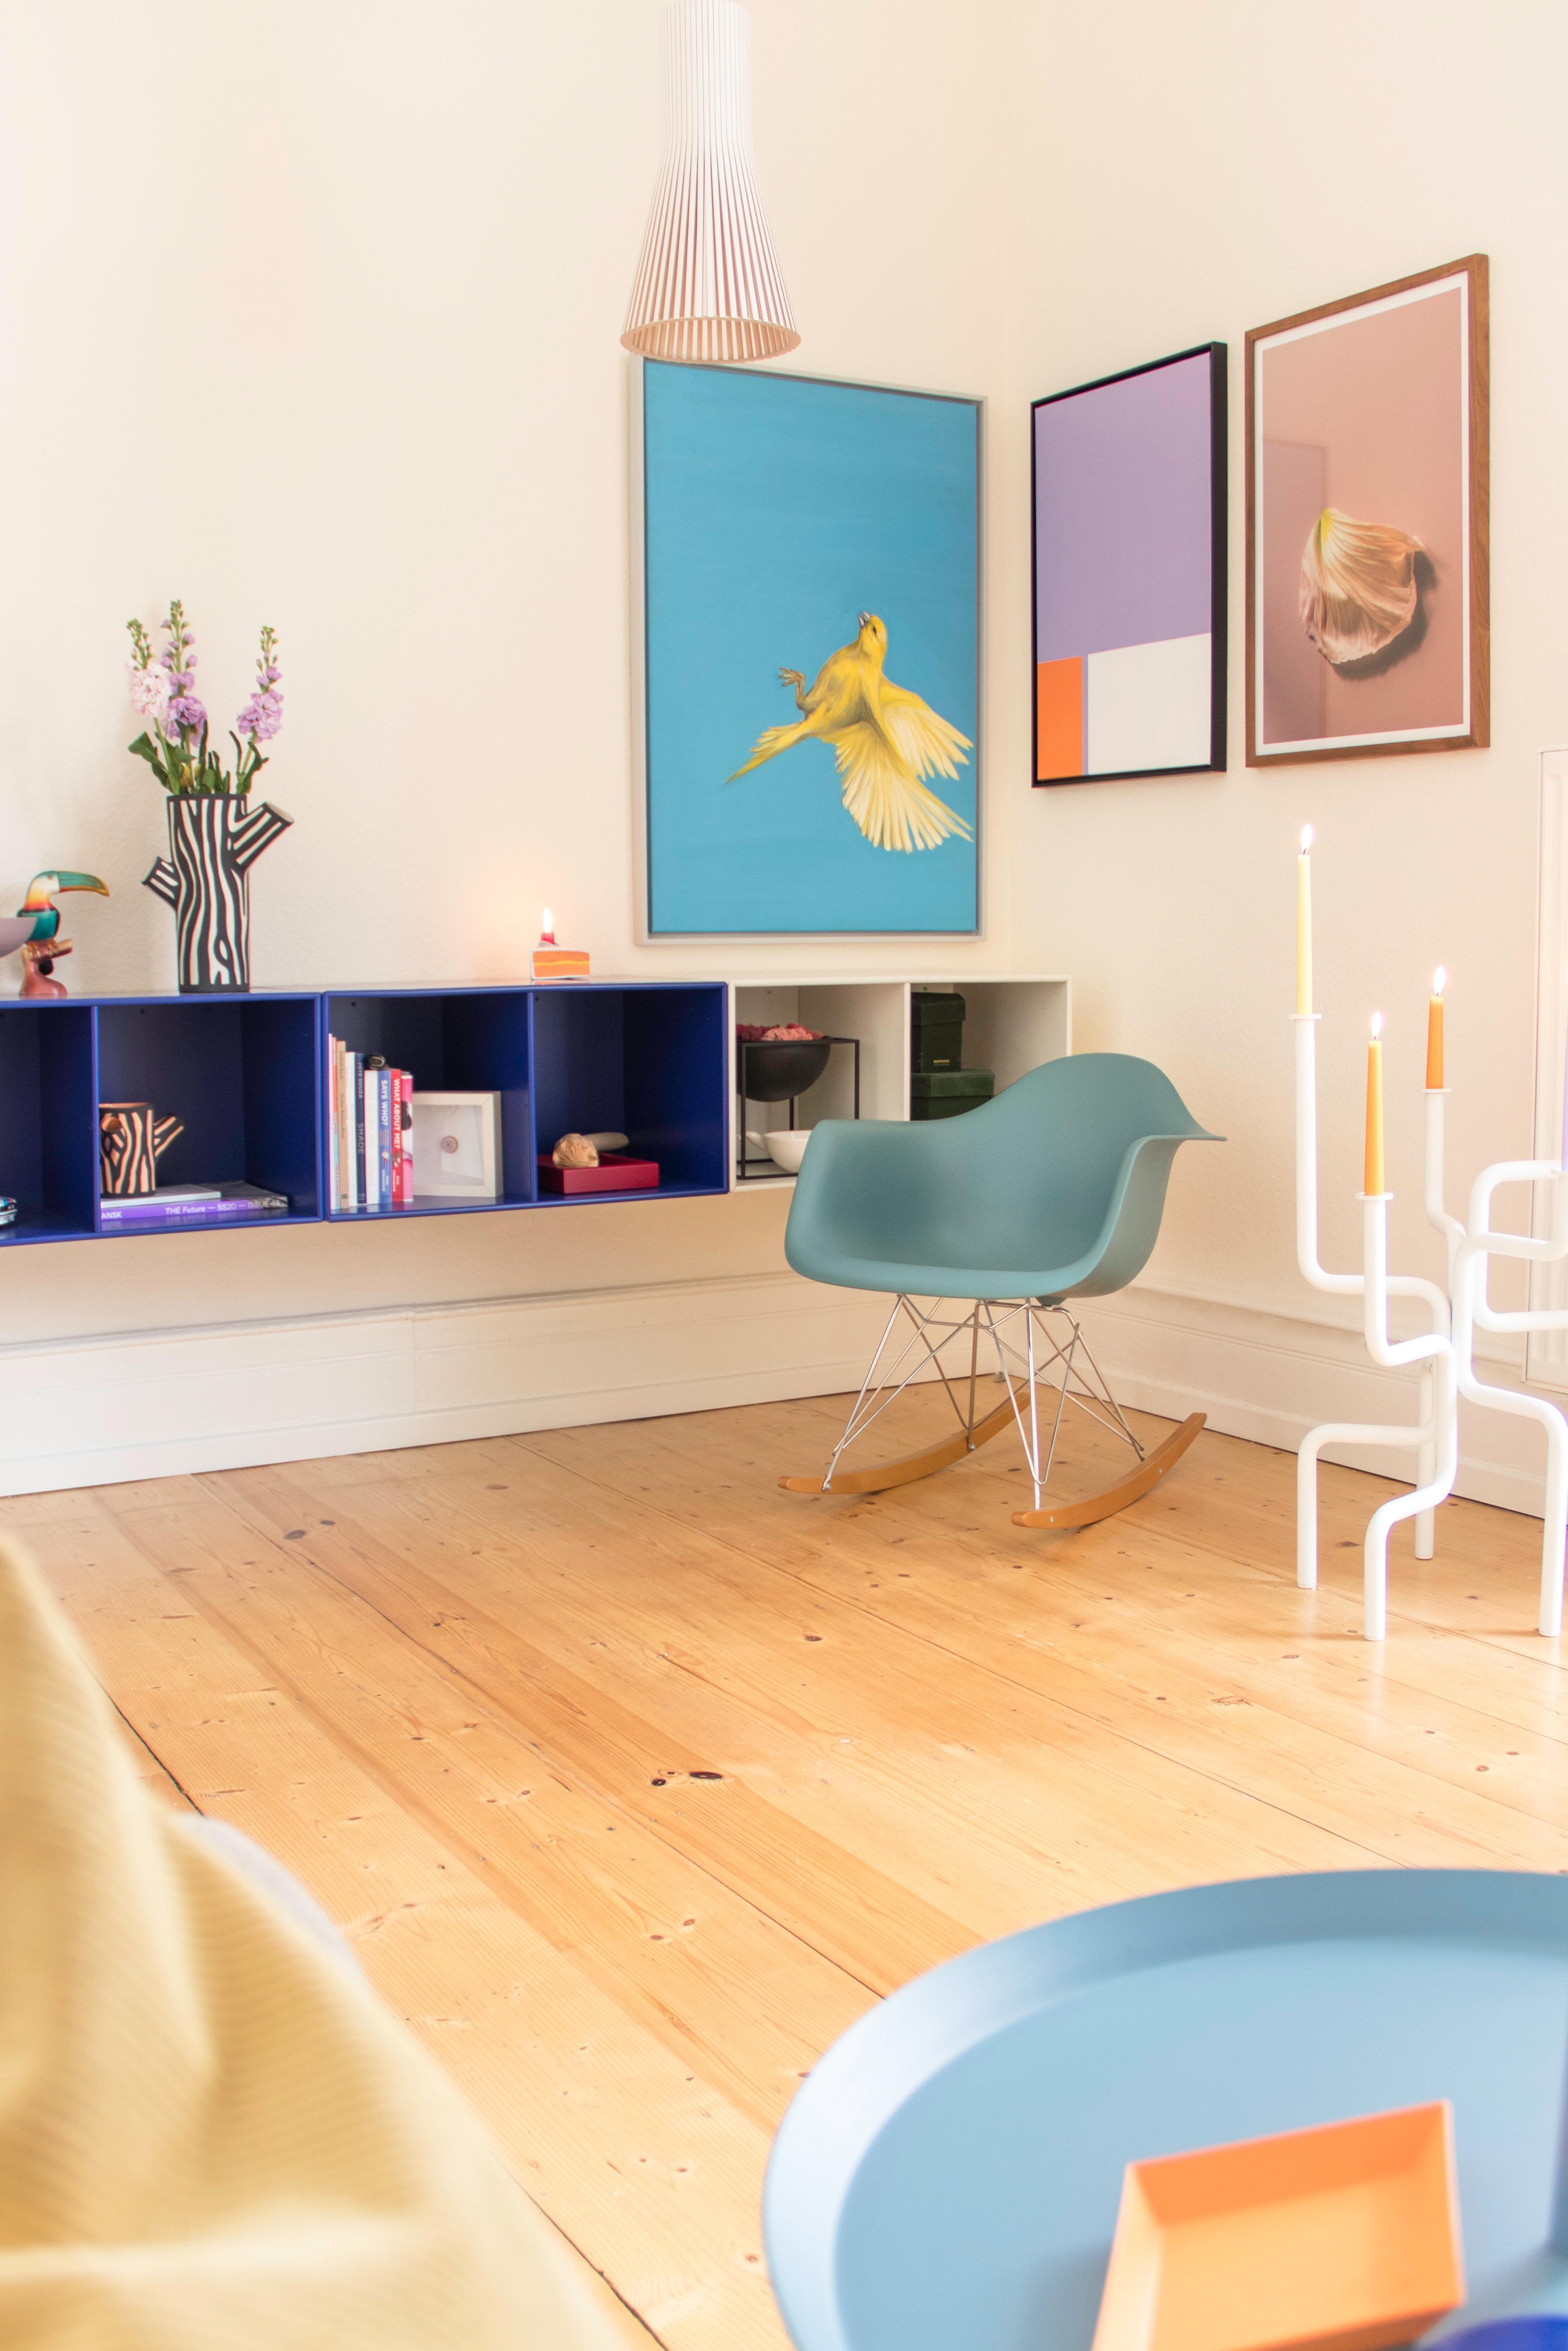 #wohnzimmer #altbau #dielenboden #couchliebt #schaukelstuhl #farbenfroh #skandi #kunst #blau #flieder #candycolors